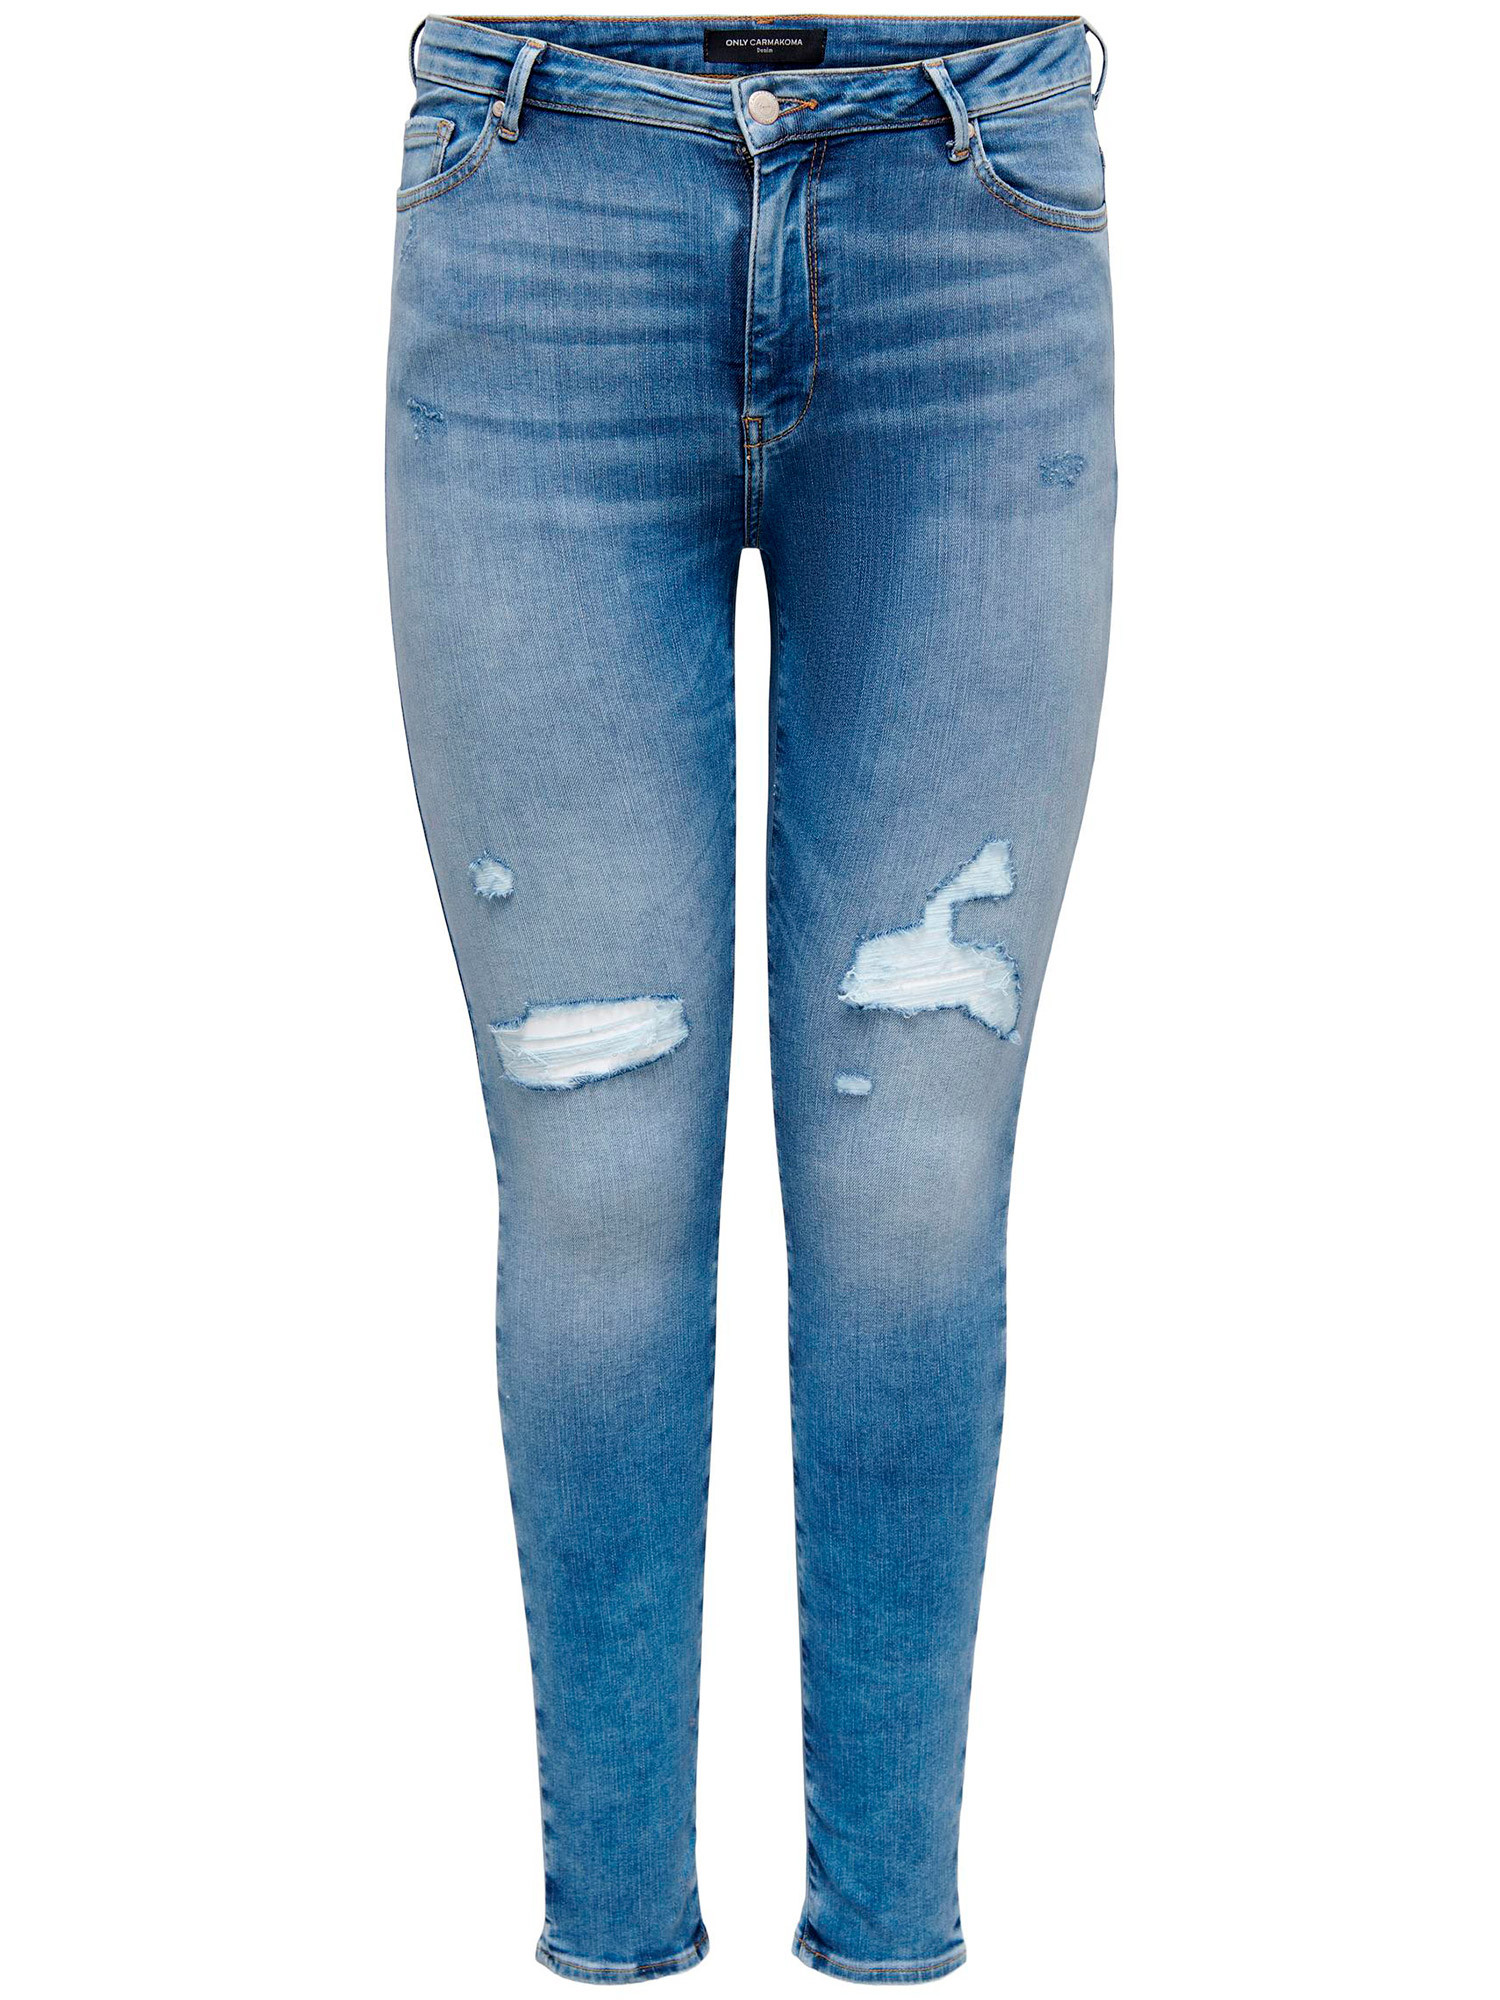 AUGUSTA - Lyseblå jeans med benlengde 34